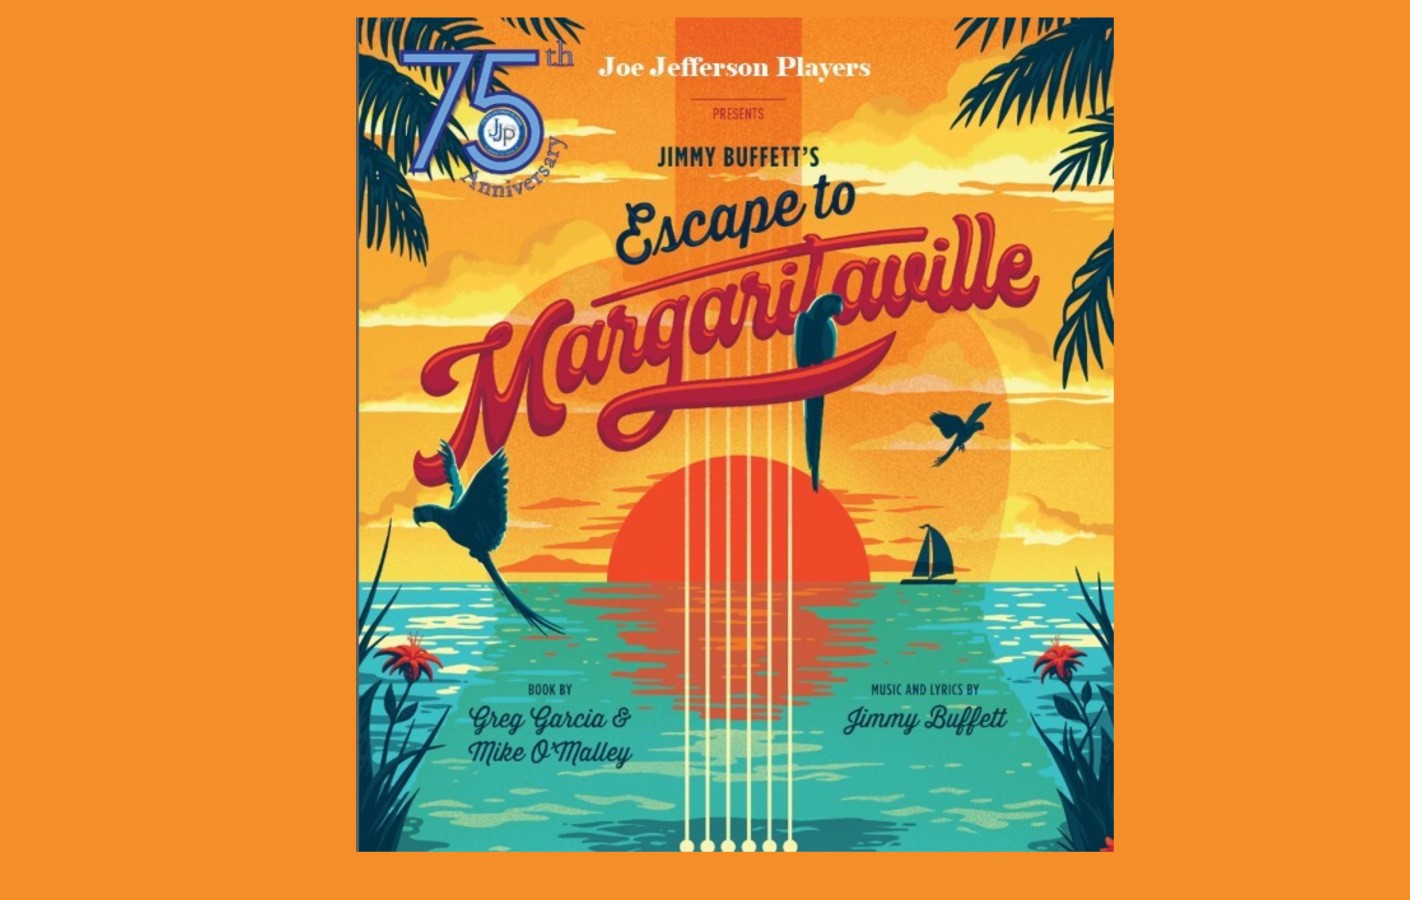 BLOOPER on Instagram: Margaritaville is wherever you make it ❤️